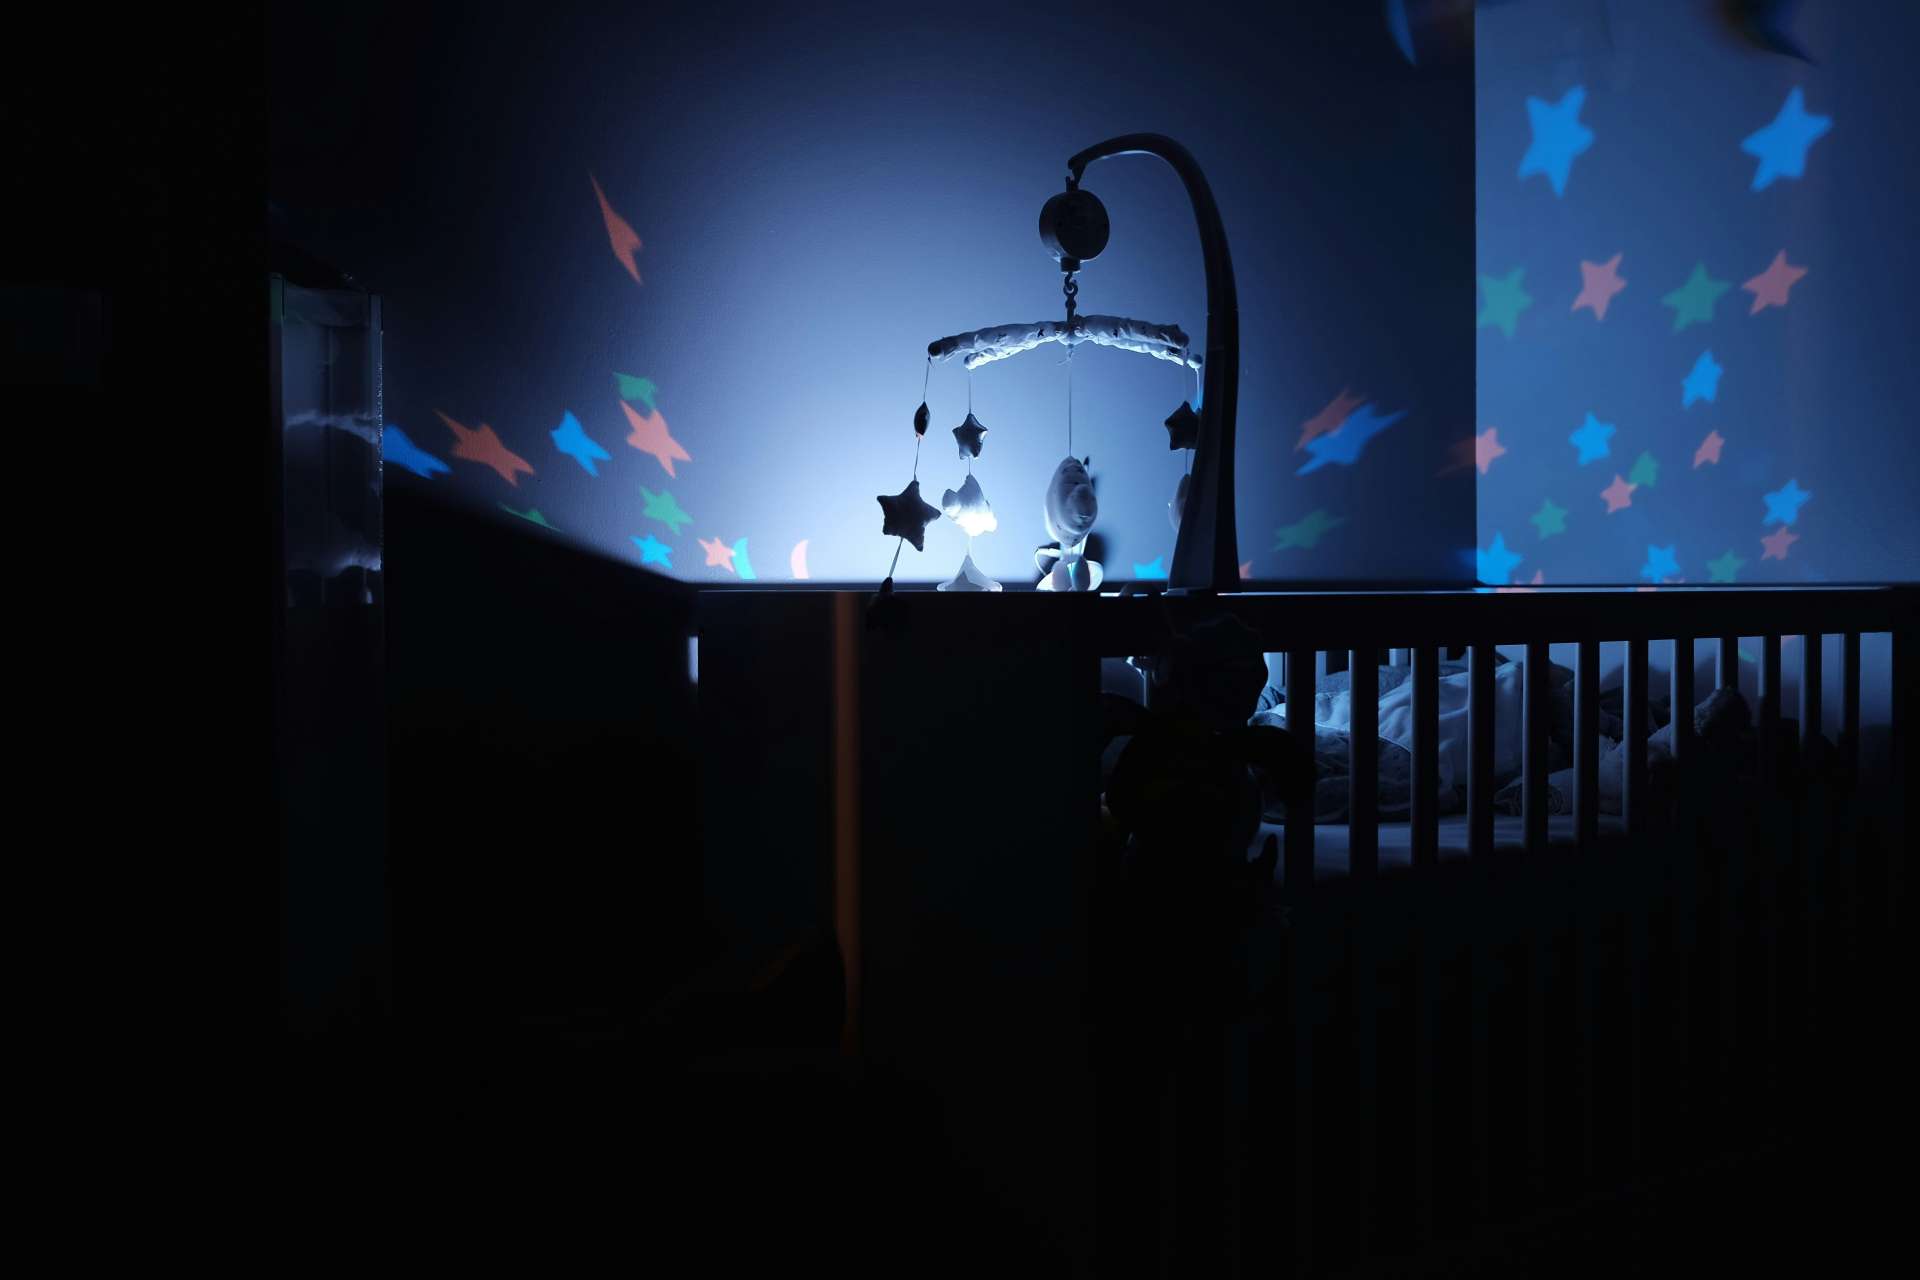 LED lights in children's bedroom